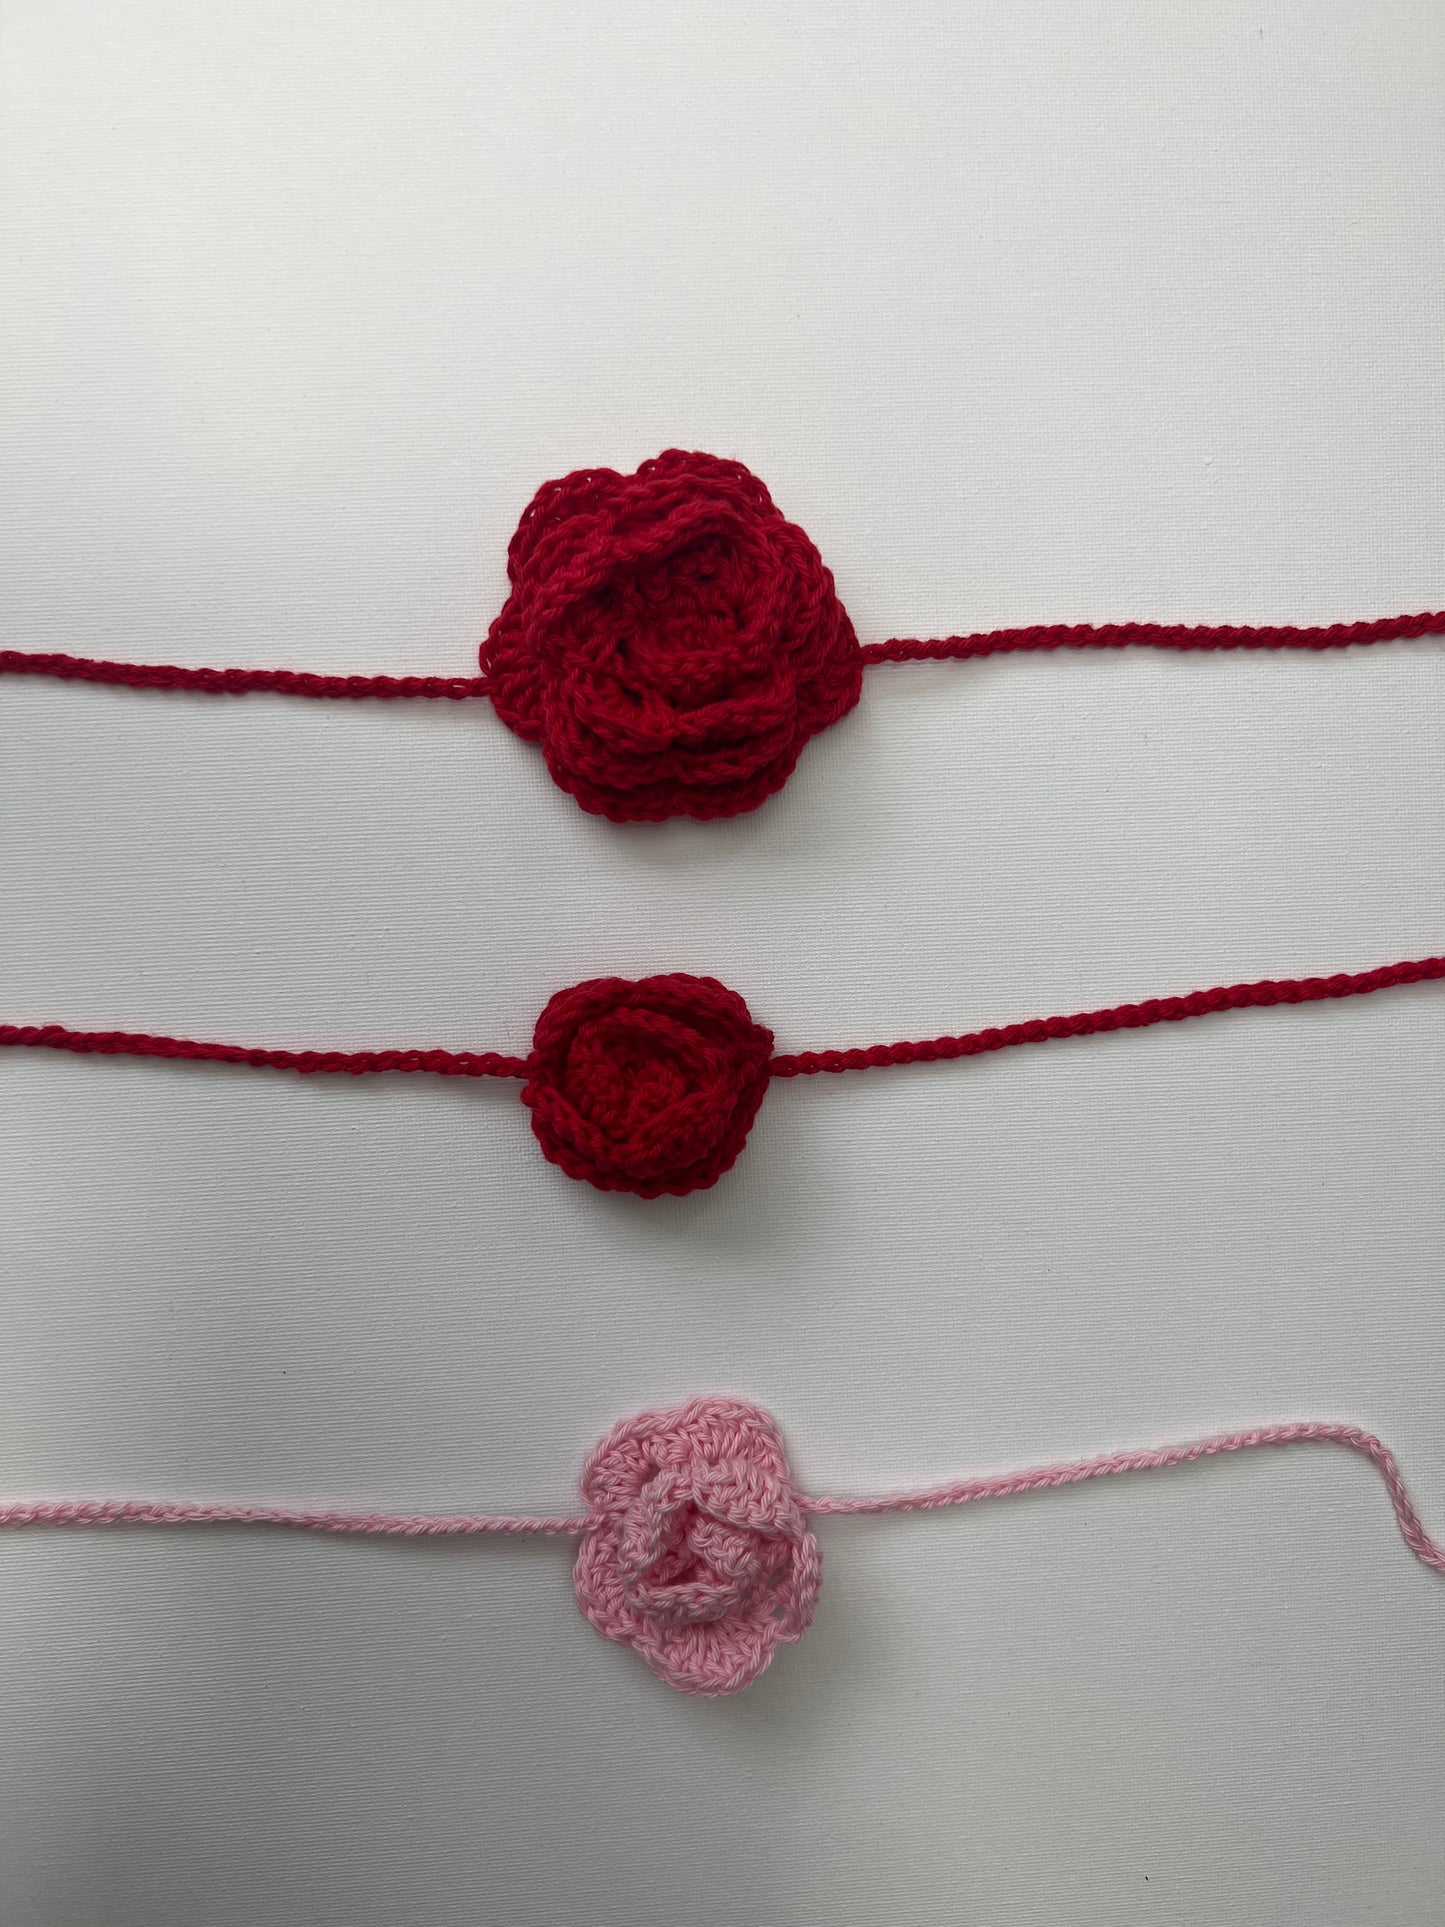 Large red rose crochet neckalce